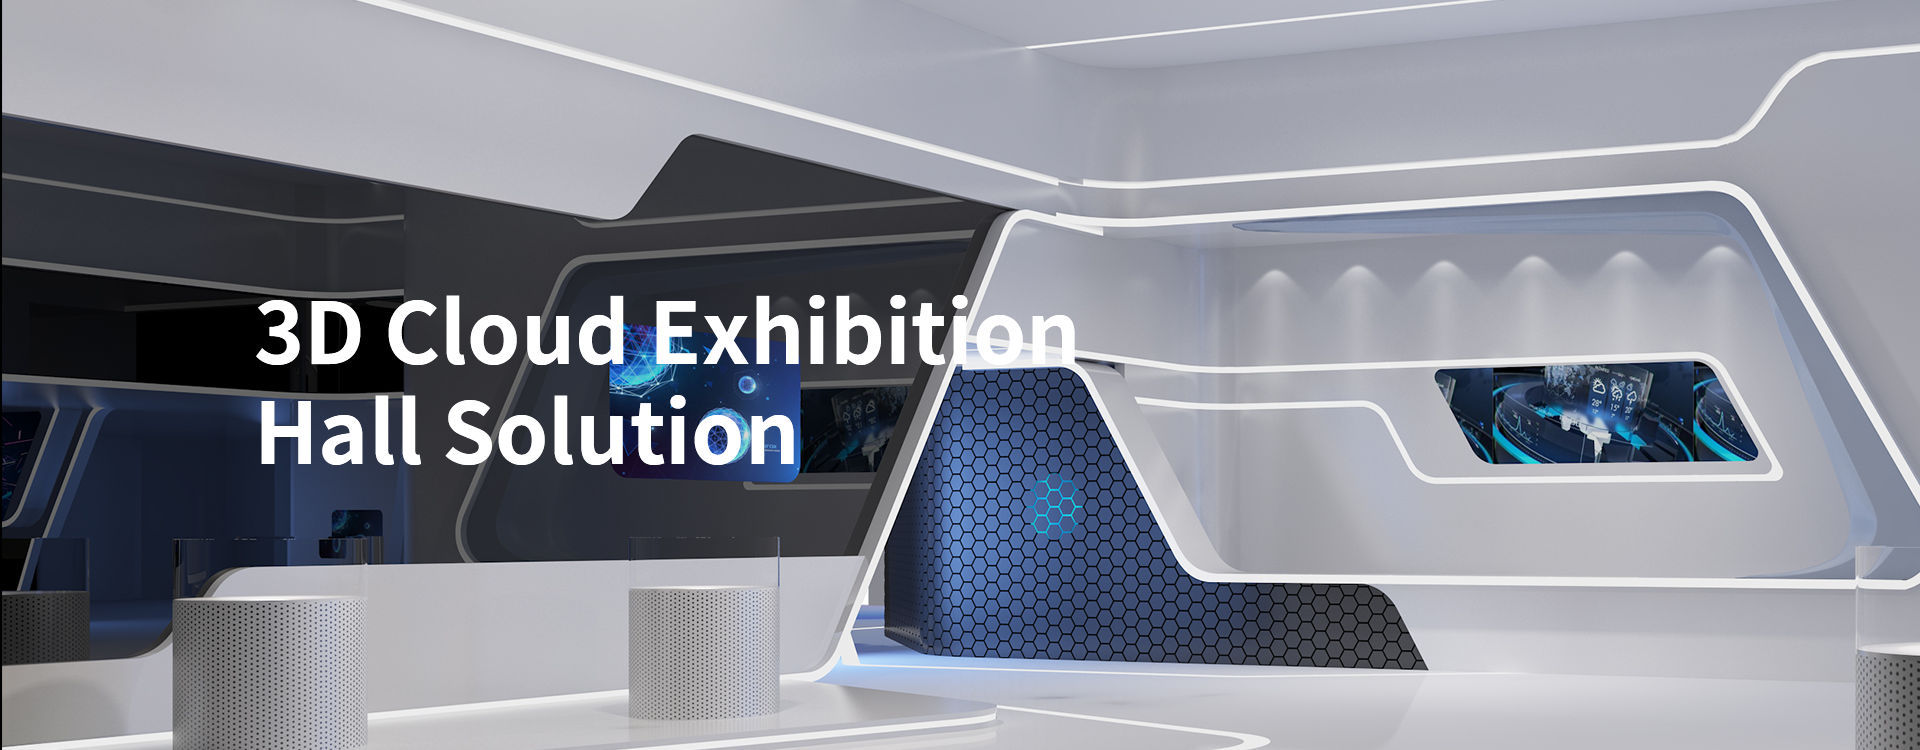 3D Cloud Exhibition Hall